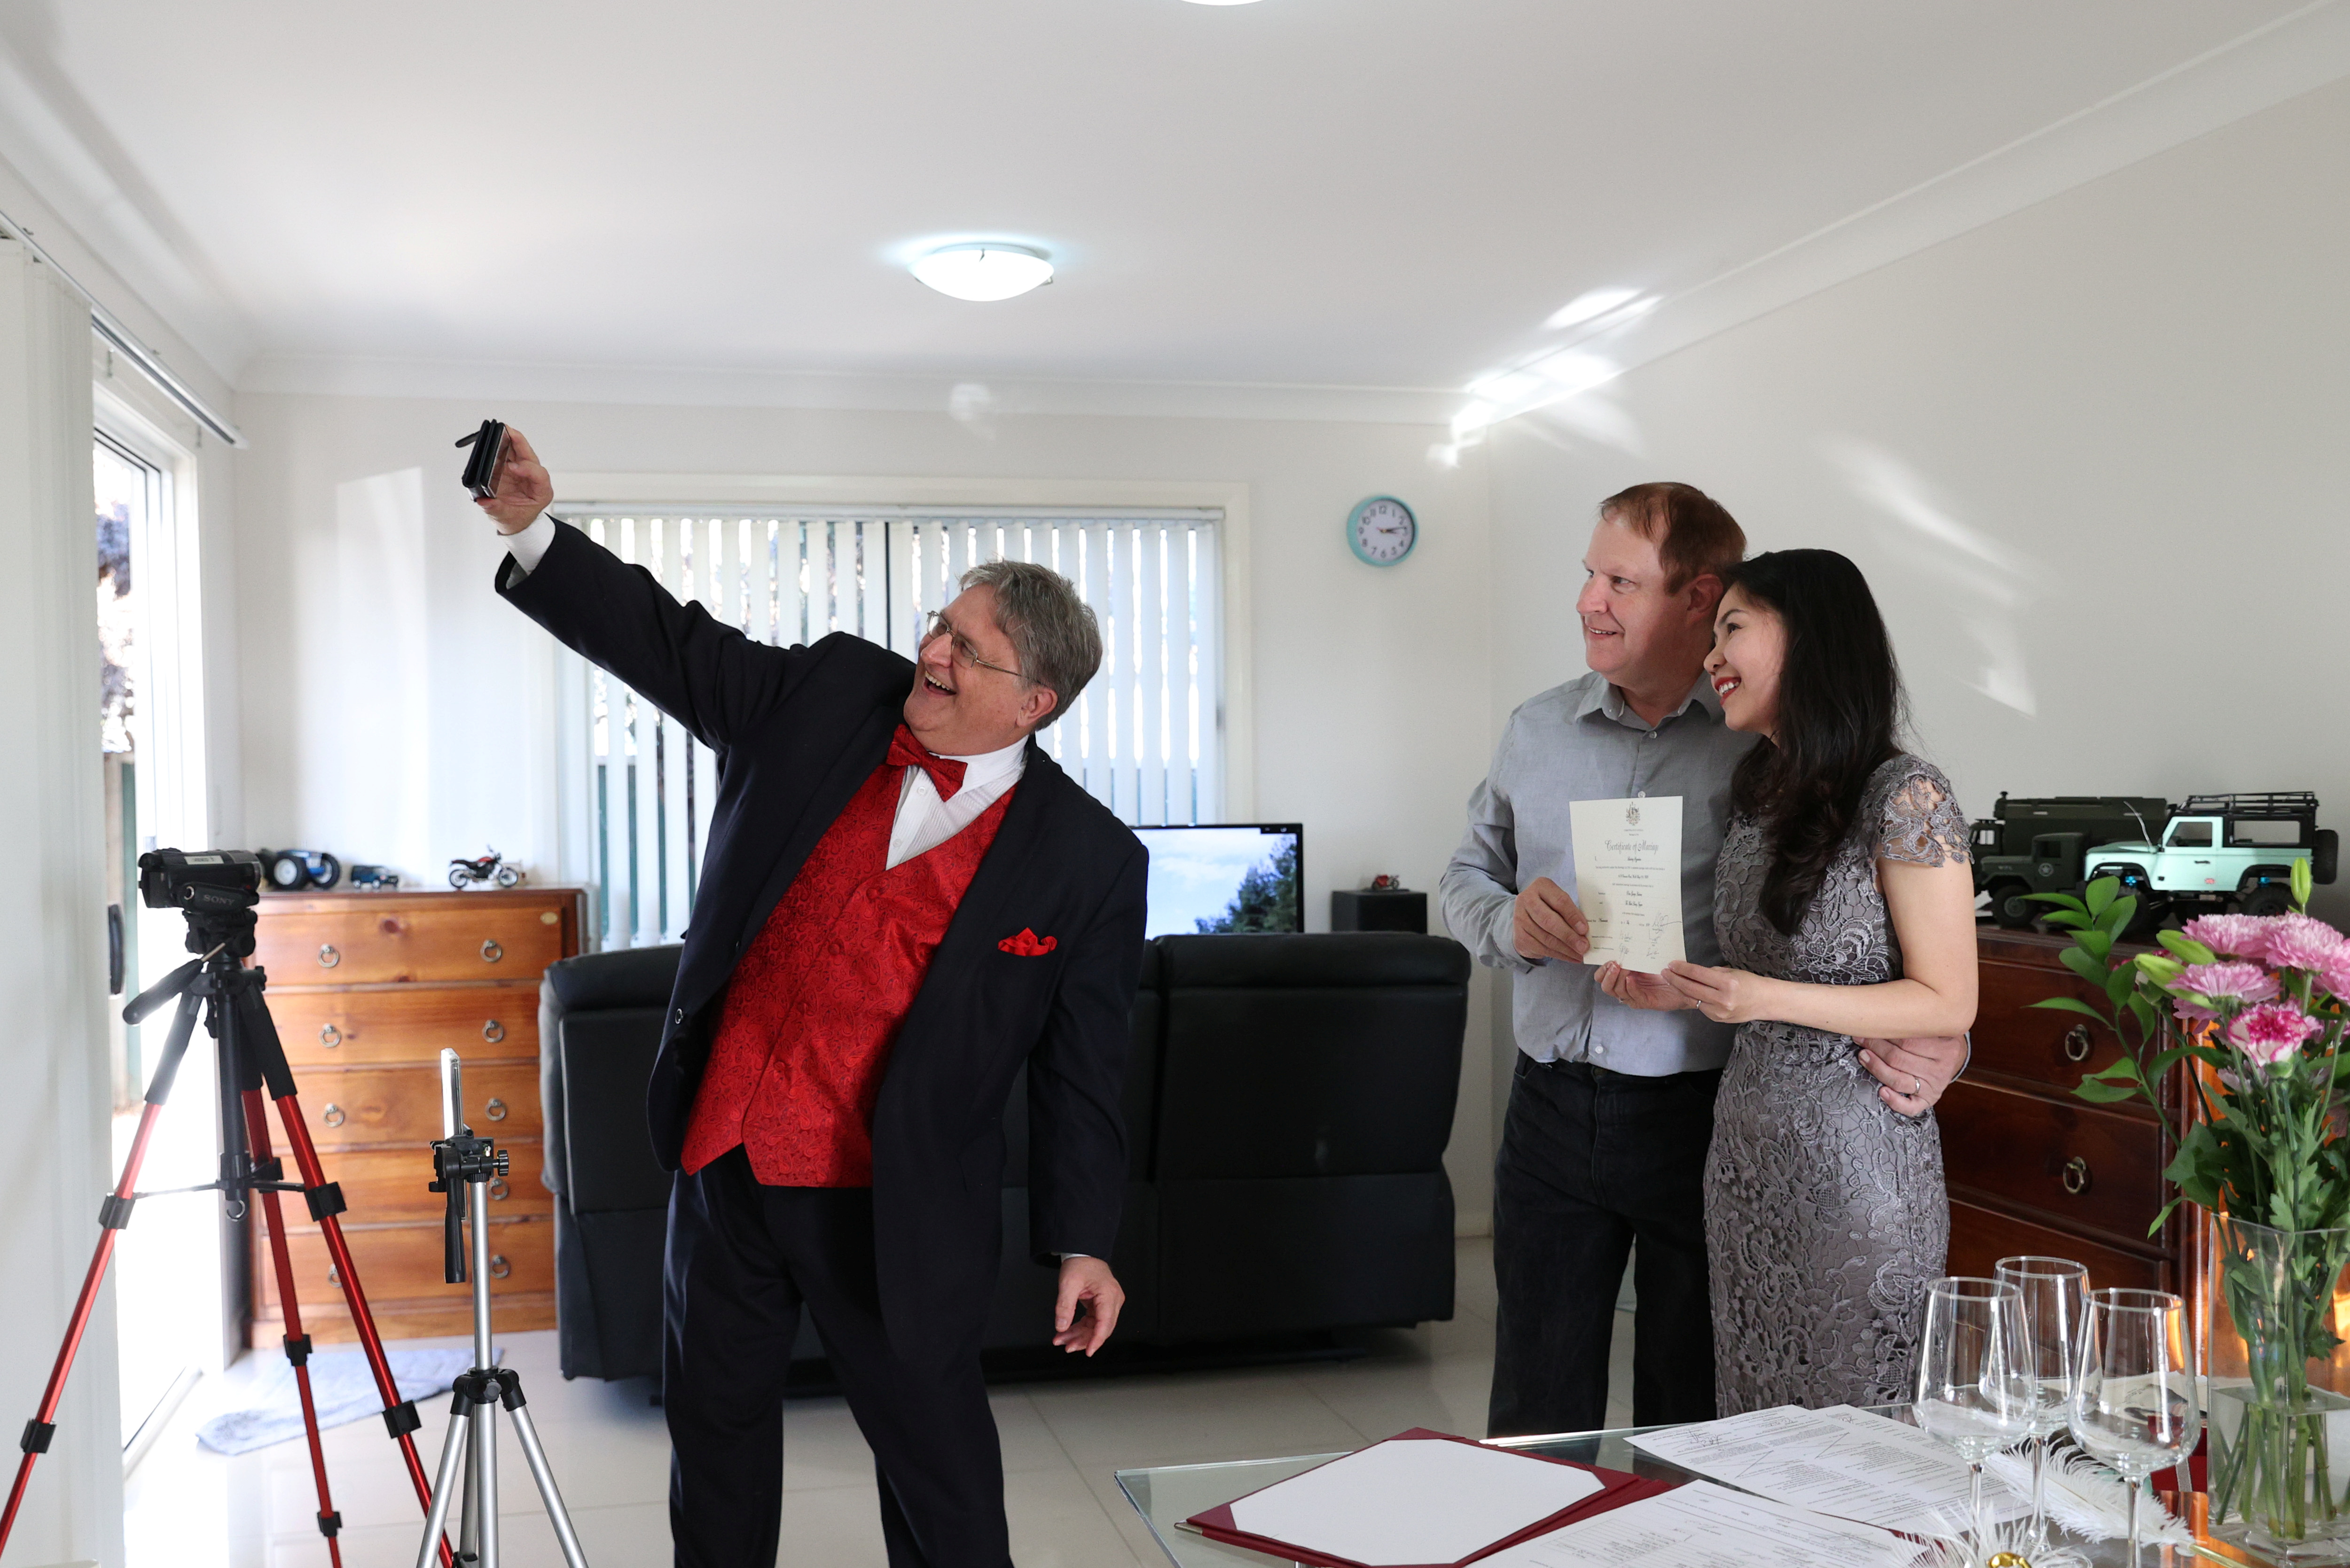 Lou Szymkow se toma una selfie con la pareja Peter Andrews y Hoang Nguyen después de oficiar una boda privada a el domicilio,  en Sydney, Australia (imagen tomada el 19 de mayo de 2020.  REUTERS/Loren Elliott)